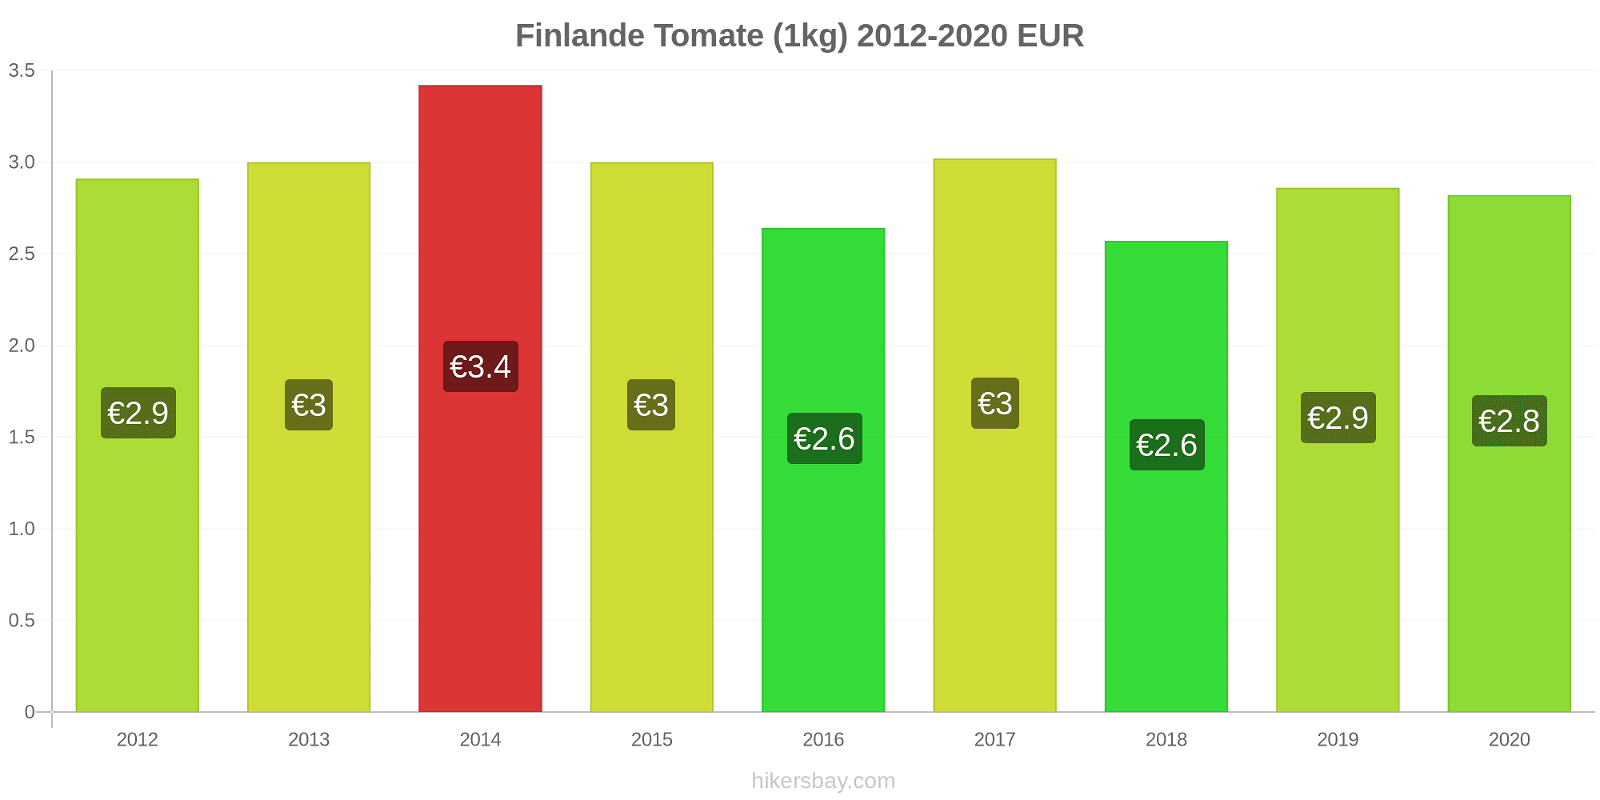 Finlande changements de prix Tomate (1kg) hikersbay.com